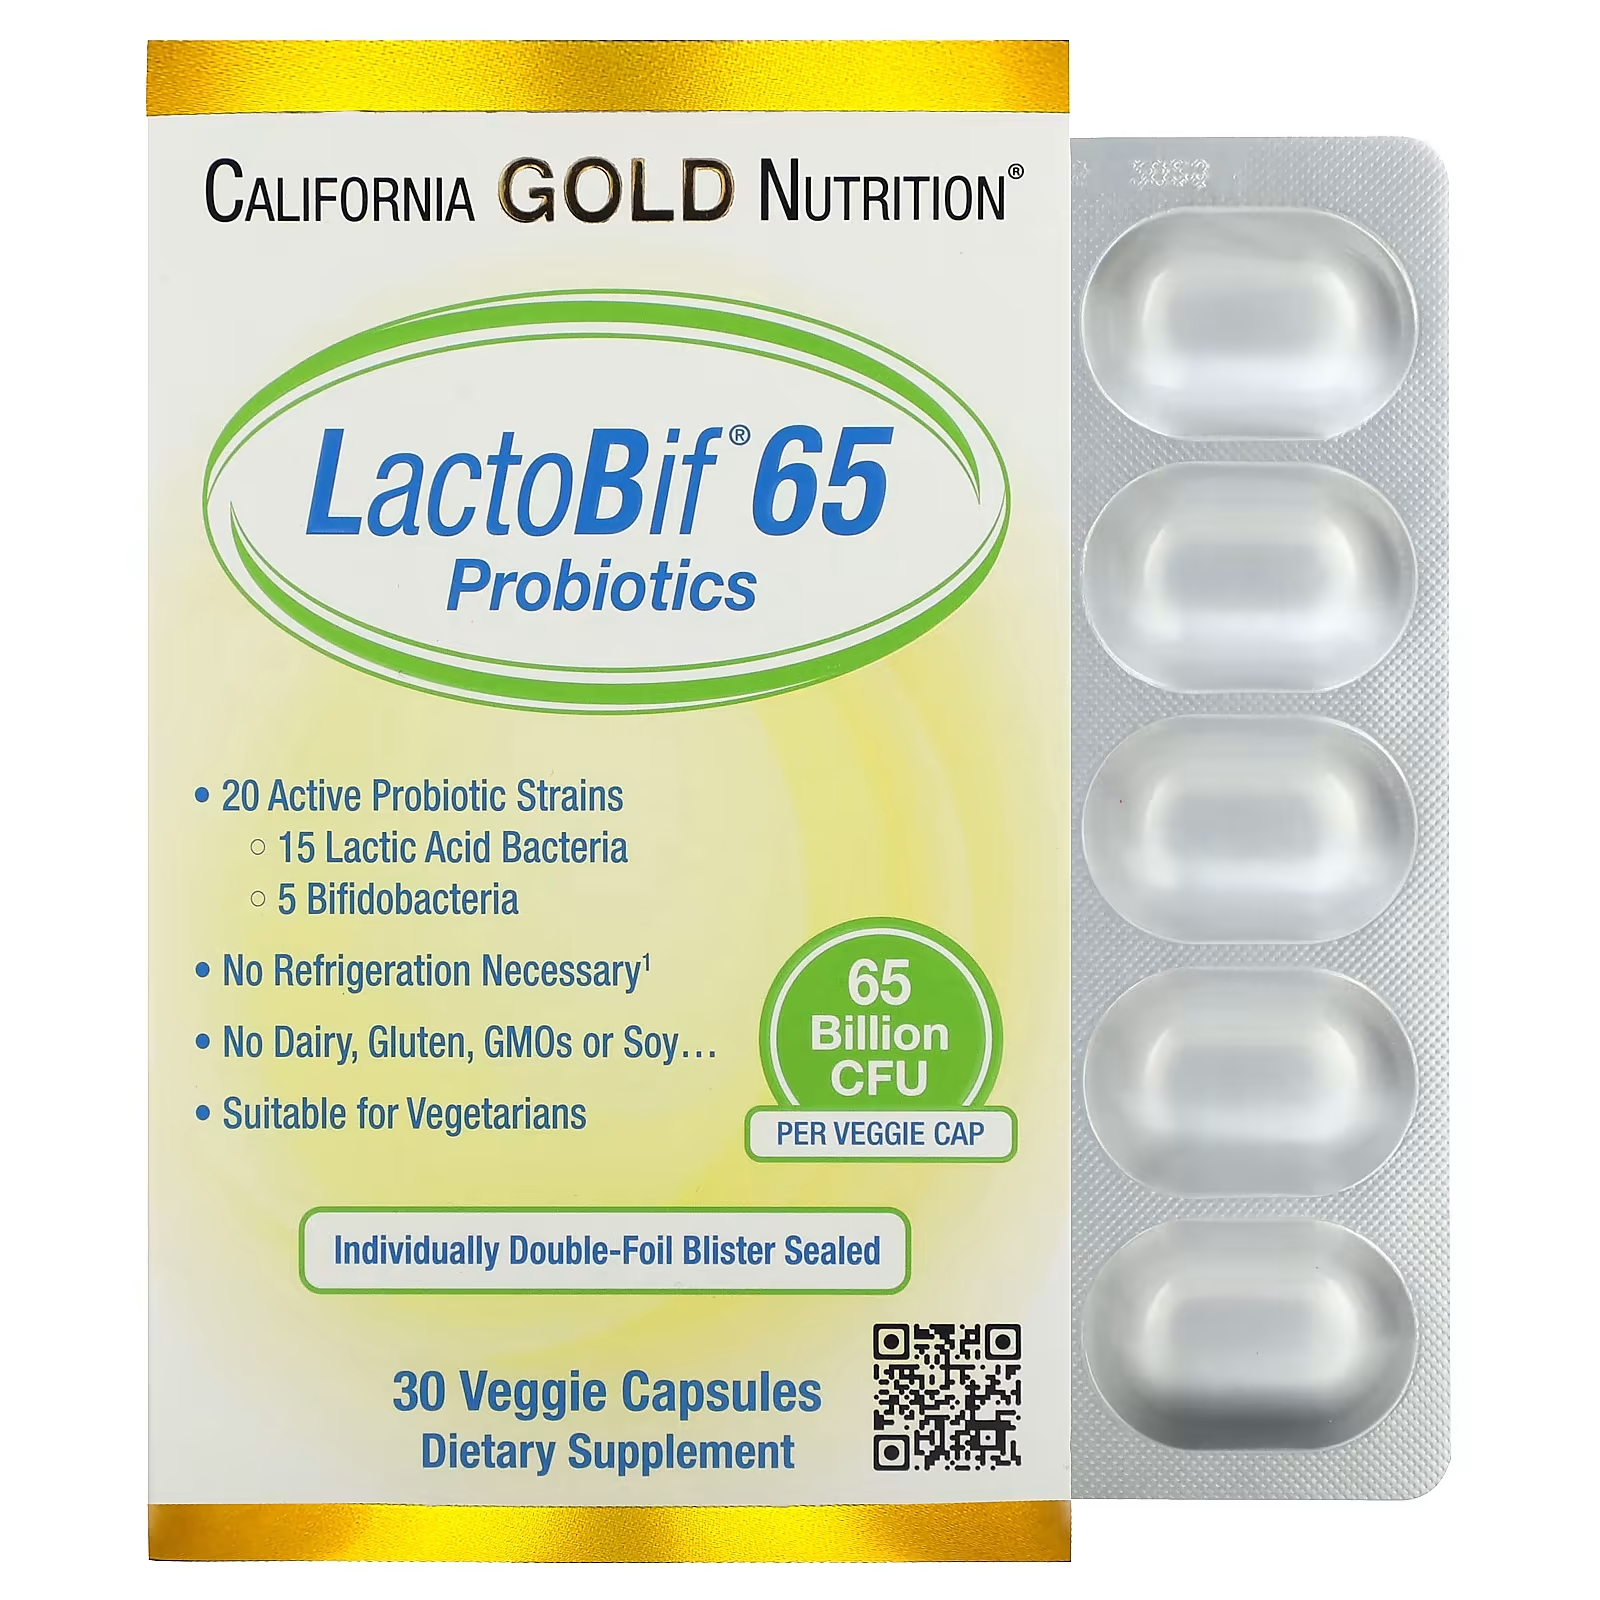 California Gold Nutrition LactoBif 65 Пробиотики 65 миллиардов КОЕ 30 растительных капсул пробиотики для мужчин gi natural 60 миллиардов кое 30 капсул naturesplus